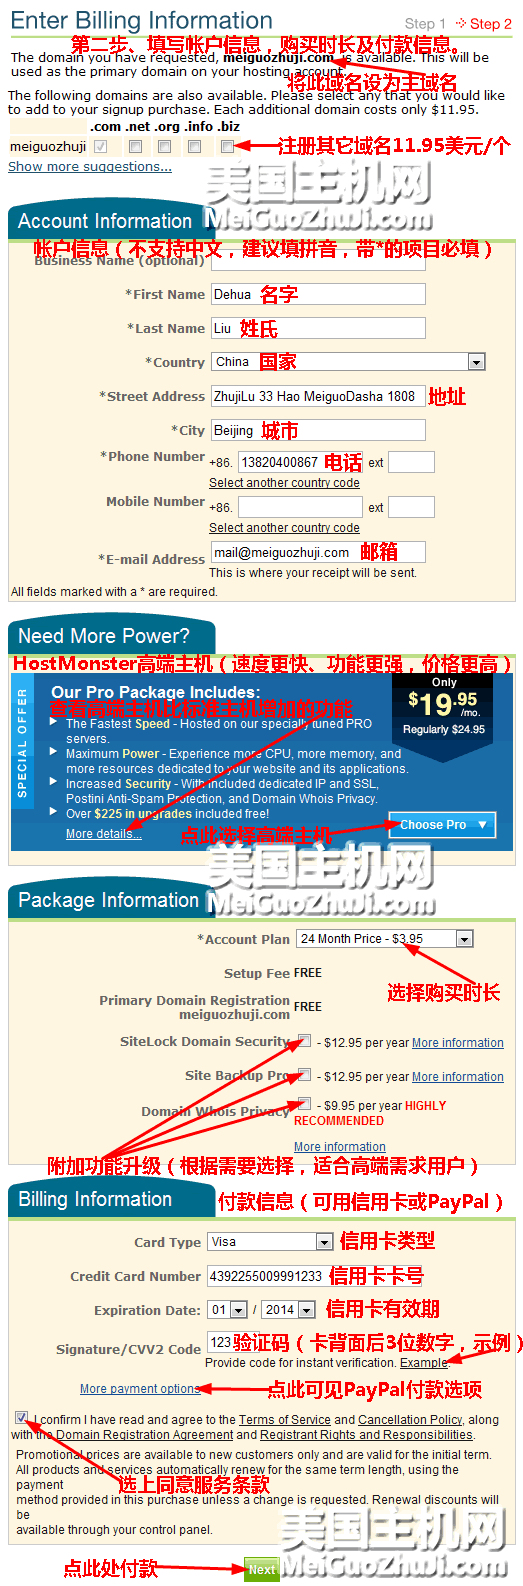 HostMonster主机申请购买中文图解教程完整版3